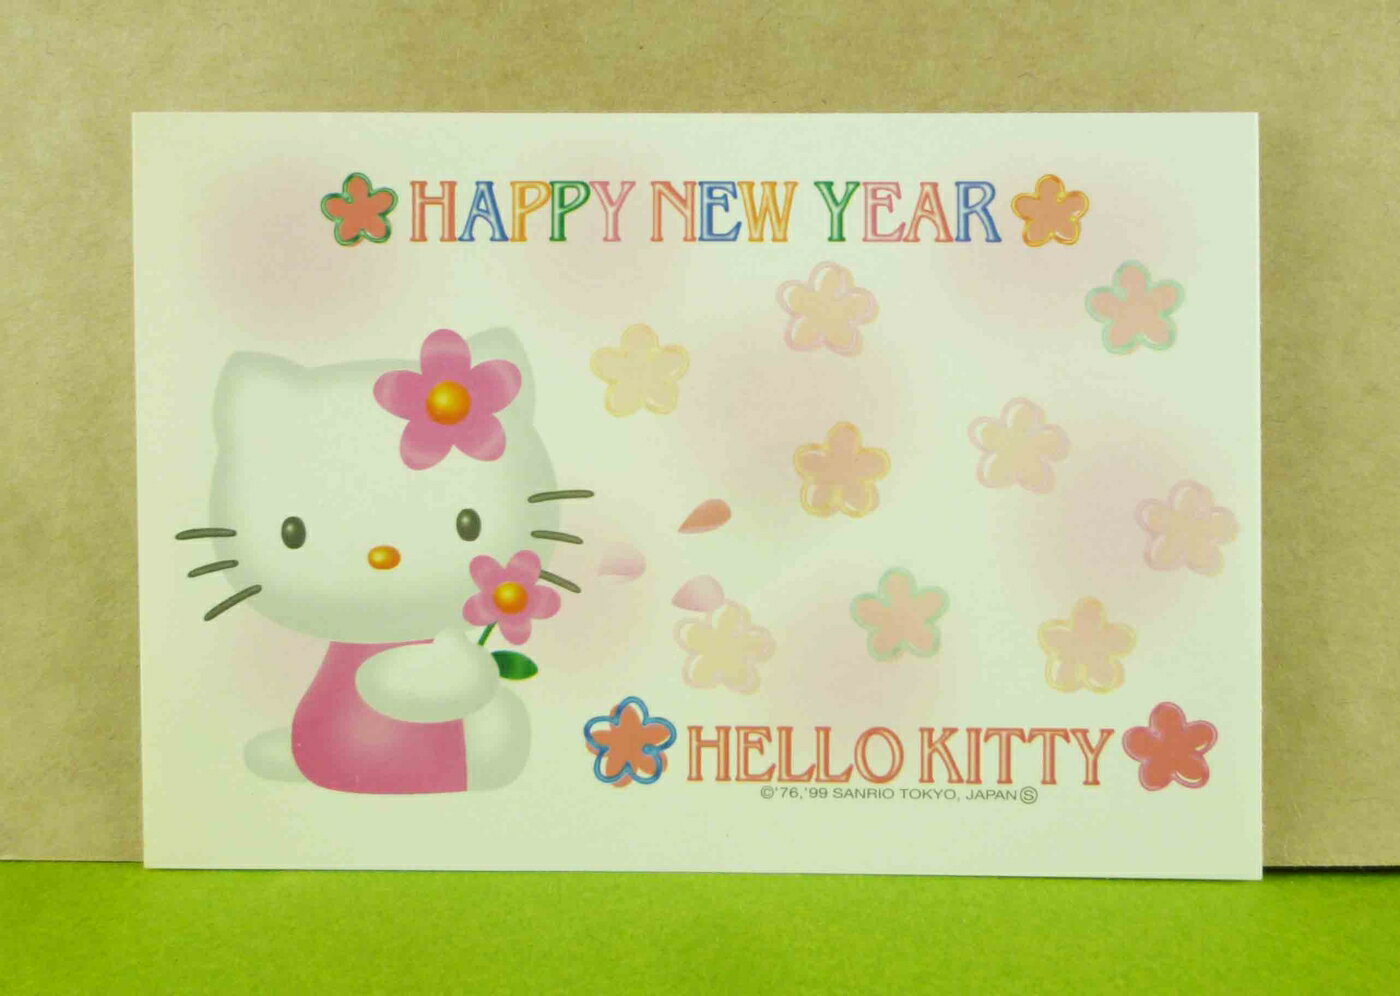 【震撼精品百貨】Hello Kitty 凱蒂貓 3入明信片-粉側坐 震撼日式精品百貨